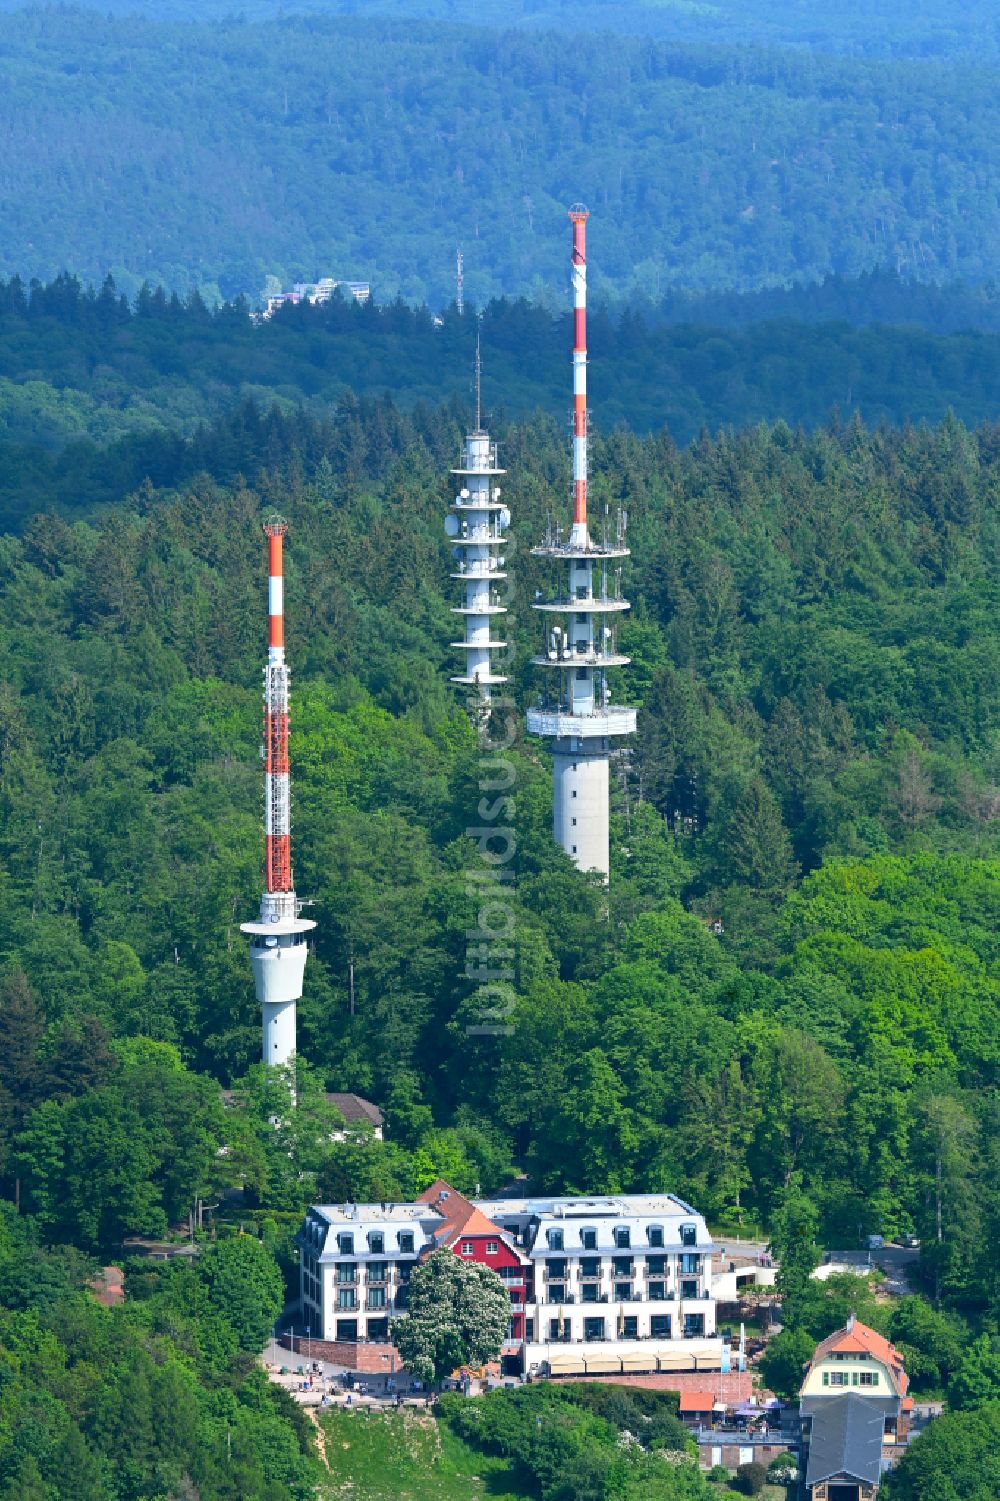 Luftbild Heidelberg - Funkturm und Sendeanlage auf der Kuppe des Bergmassives des Königstuhl in Heidelberg im Bundesland Baden-Württemberg, Deutschland